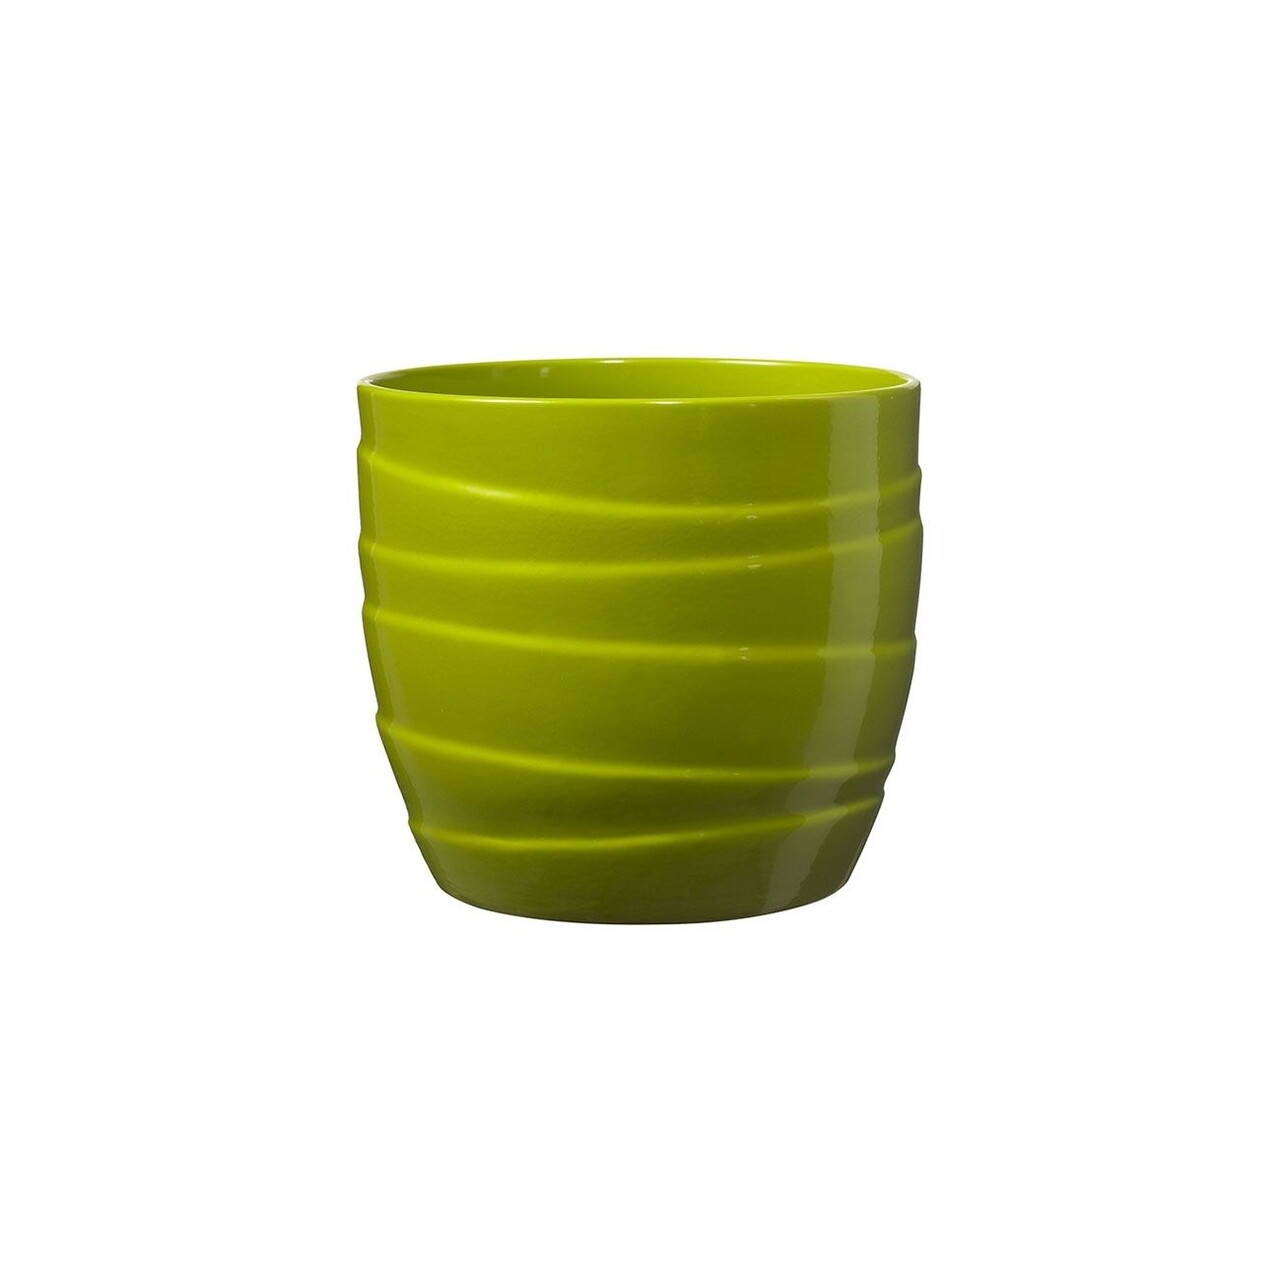 Ghiveci Barletta, ceramica, 16 cm, verde